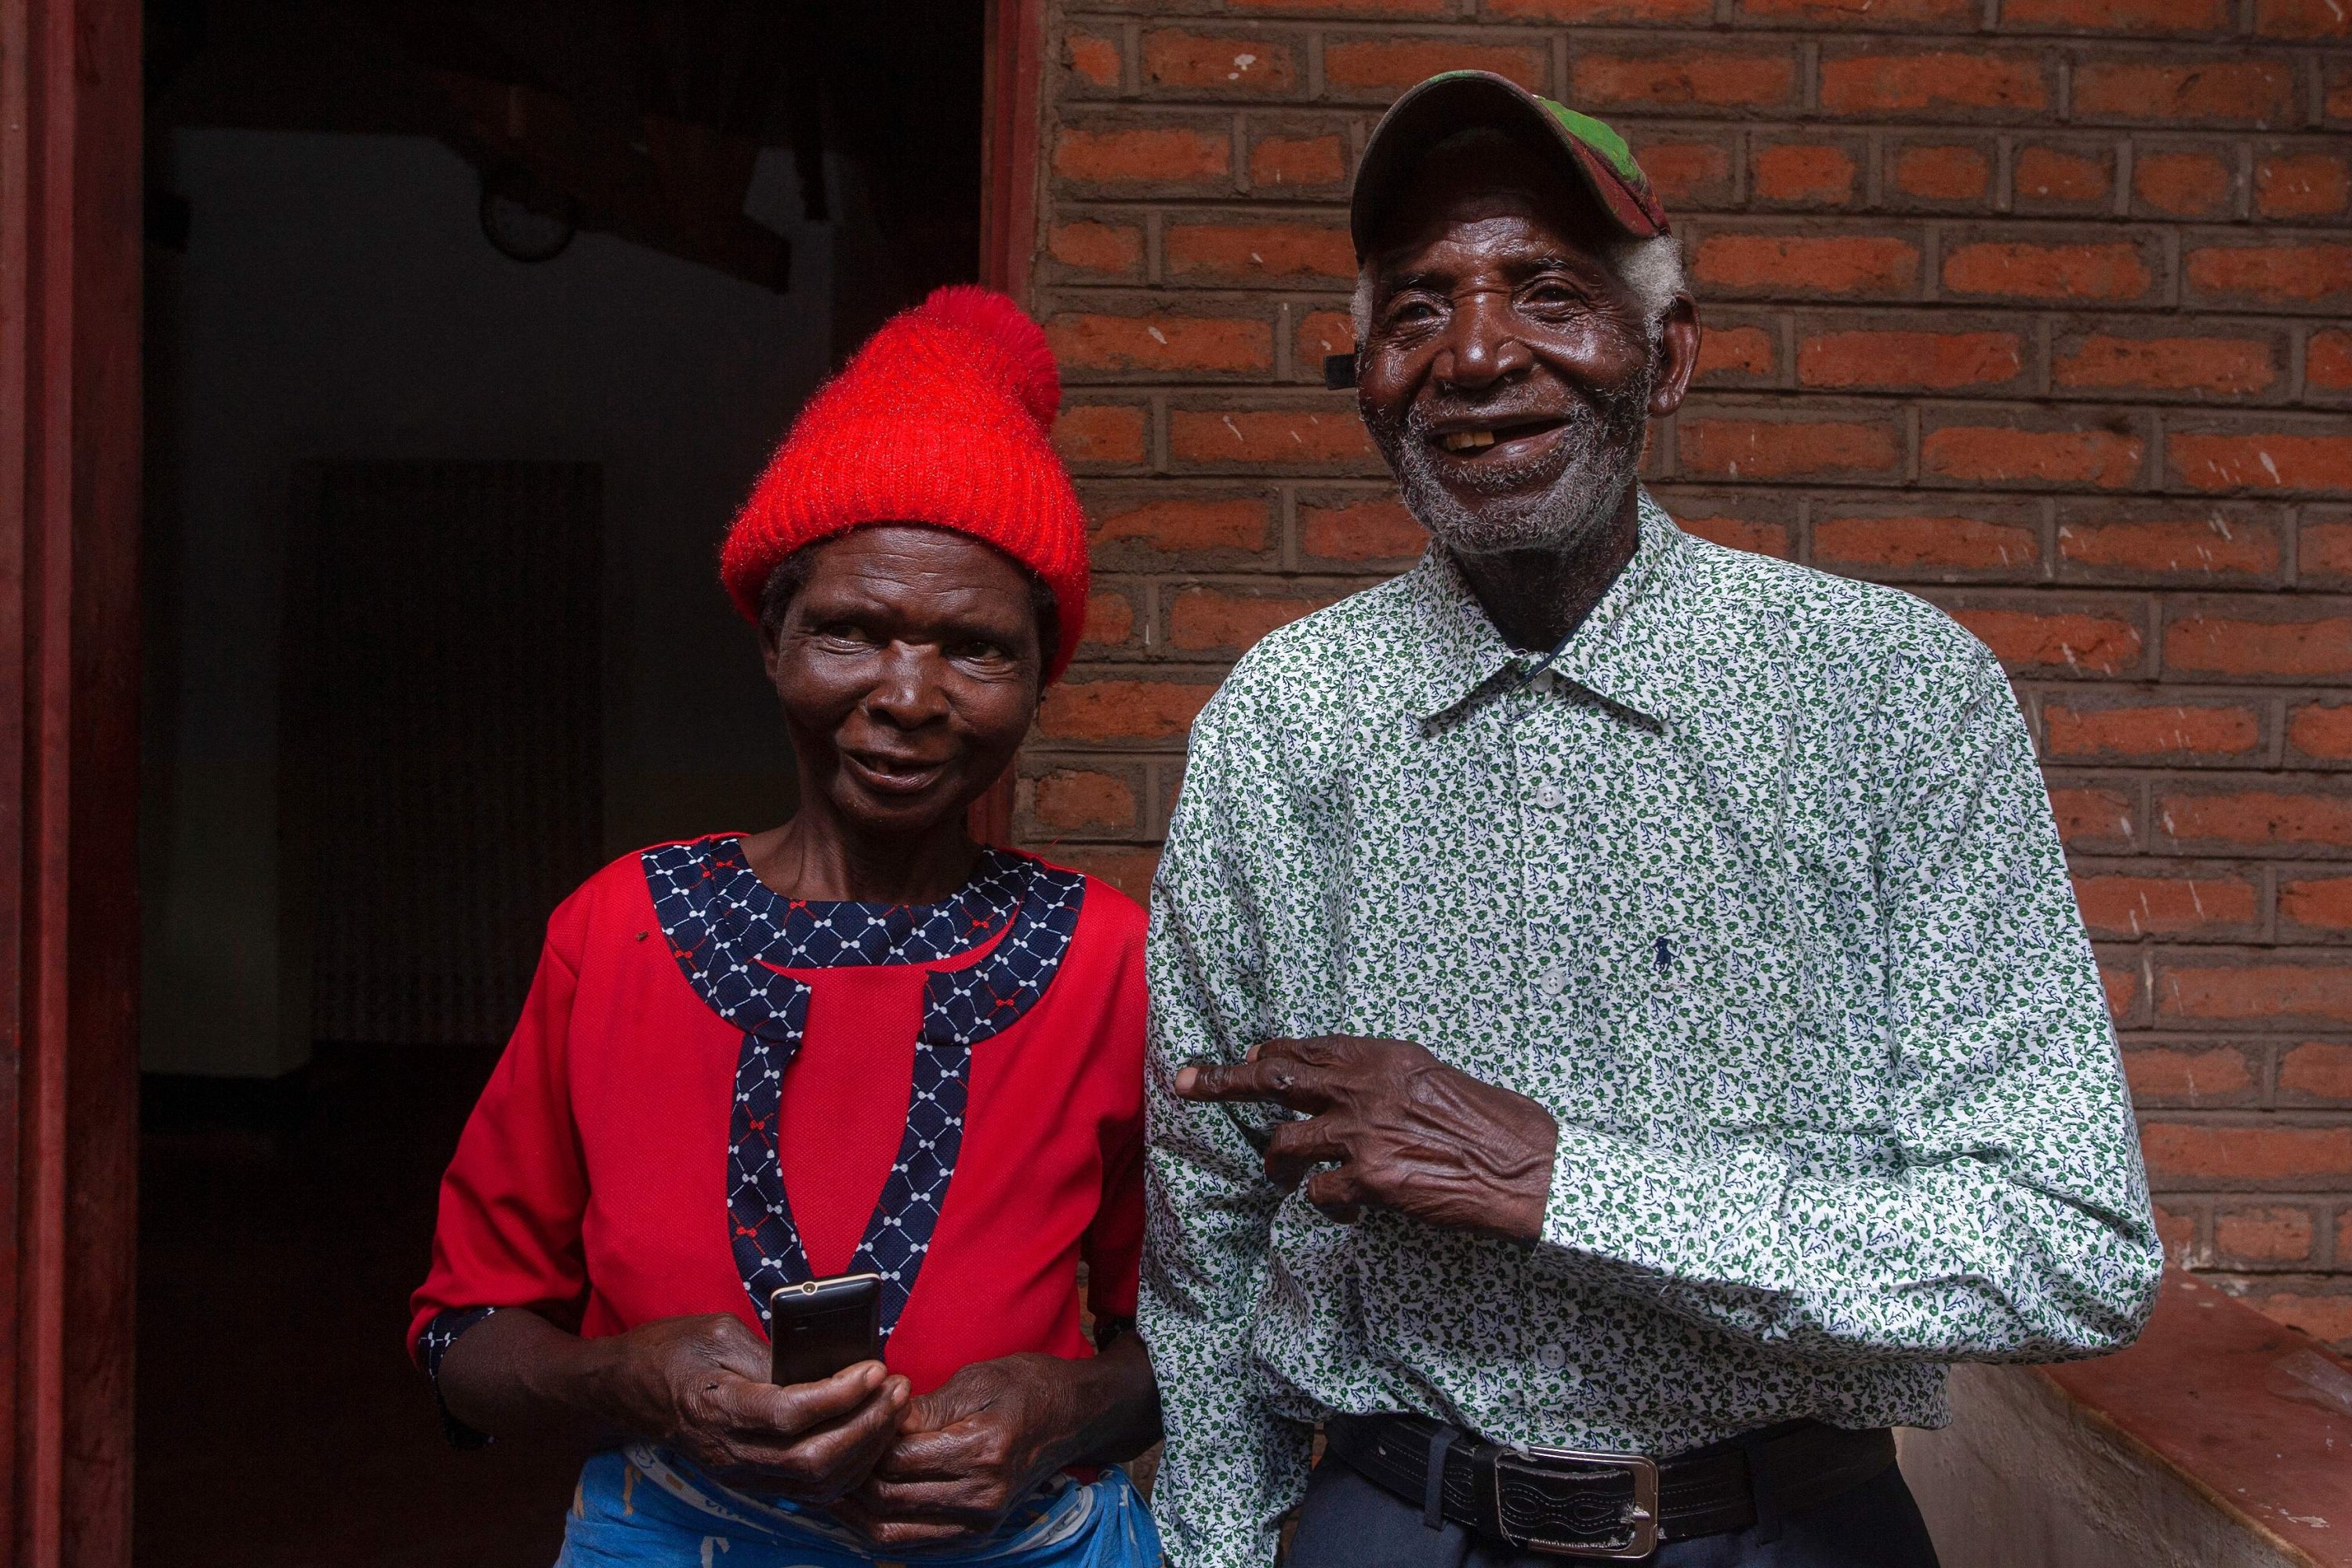 Musisi Malawi Giddes Chalamanda (kanan), 92, berpose bersama istrinya Margalita Alfred, 71, di rumah mereka di Desa Madzuwa dekat Chiradzulu, Malawi selatan, 19 Januari.  13, 2022. (AFP)